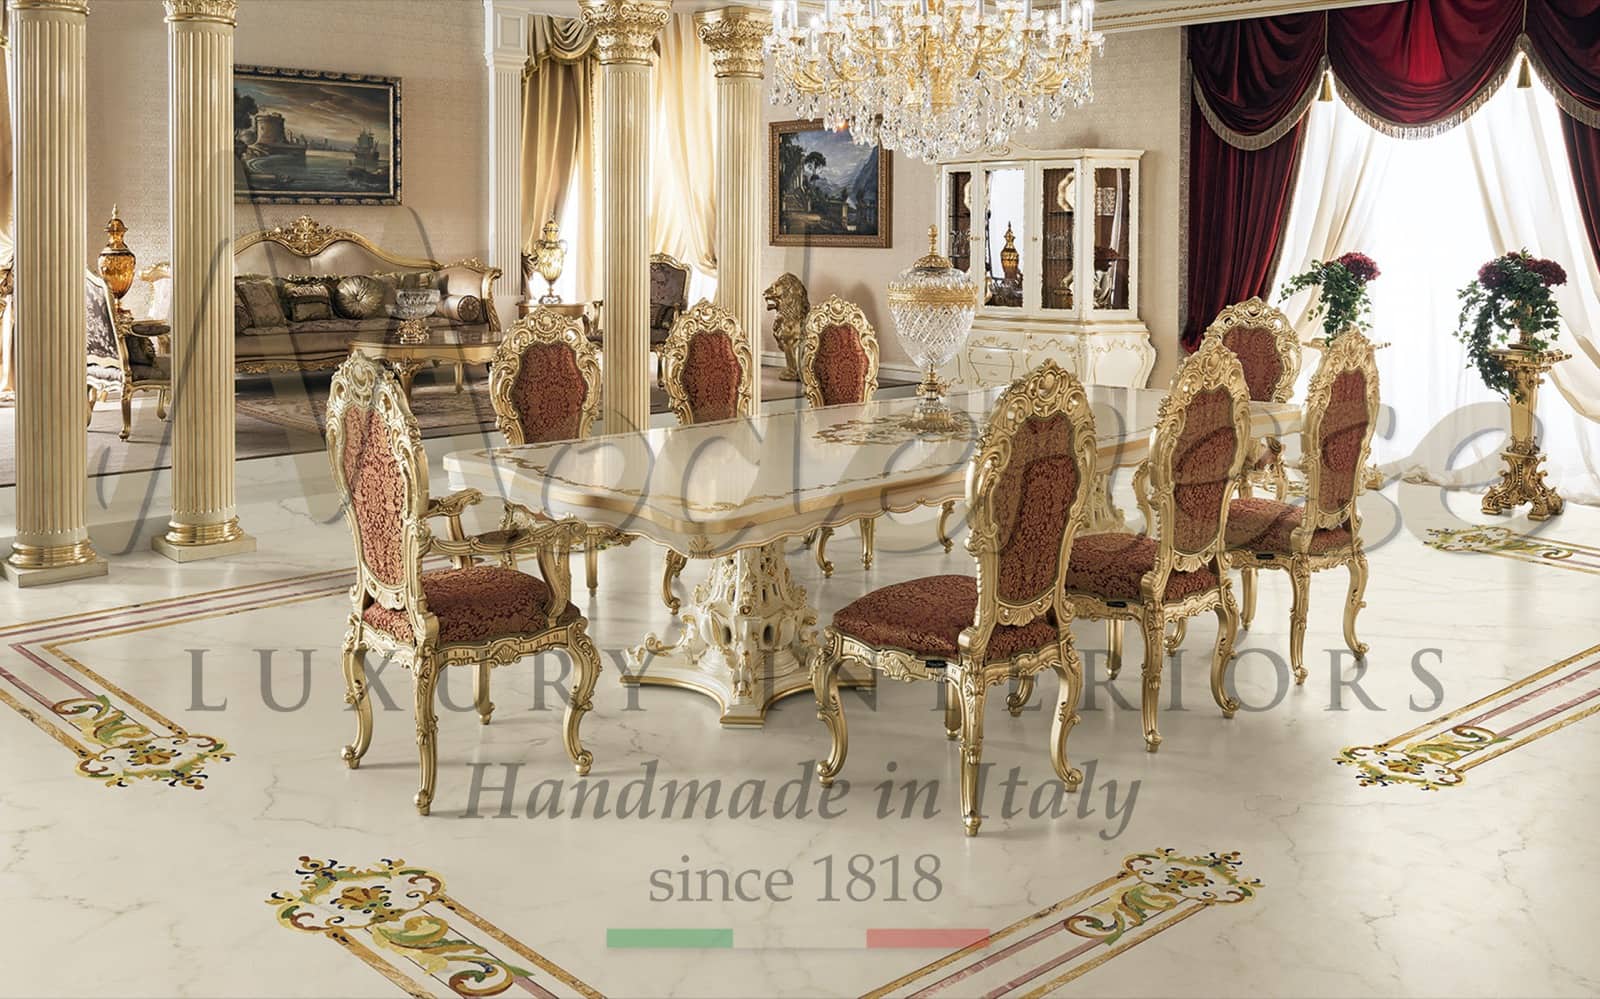 jídelna elegantní benátský majestátní styl klasické interiéry masivní dřevo plátkové zlato nábytek na zakázku ruční výroba v Itálii domcí dekorace elegantní rokoko projekty na klíč zlaté detaily plátkové zlat